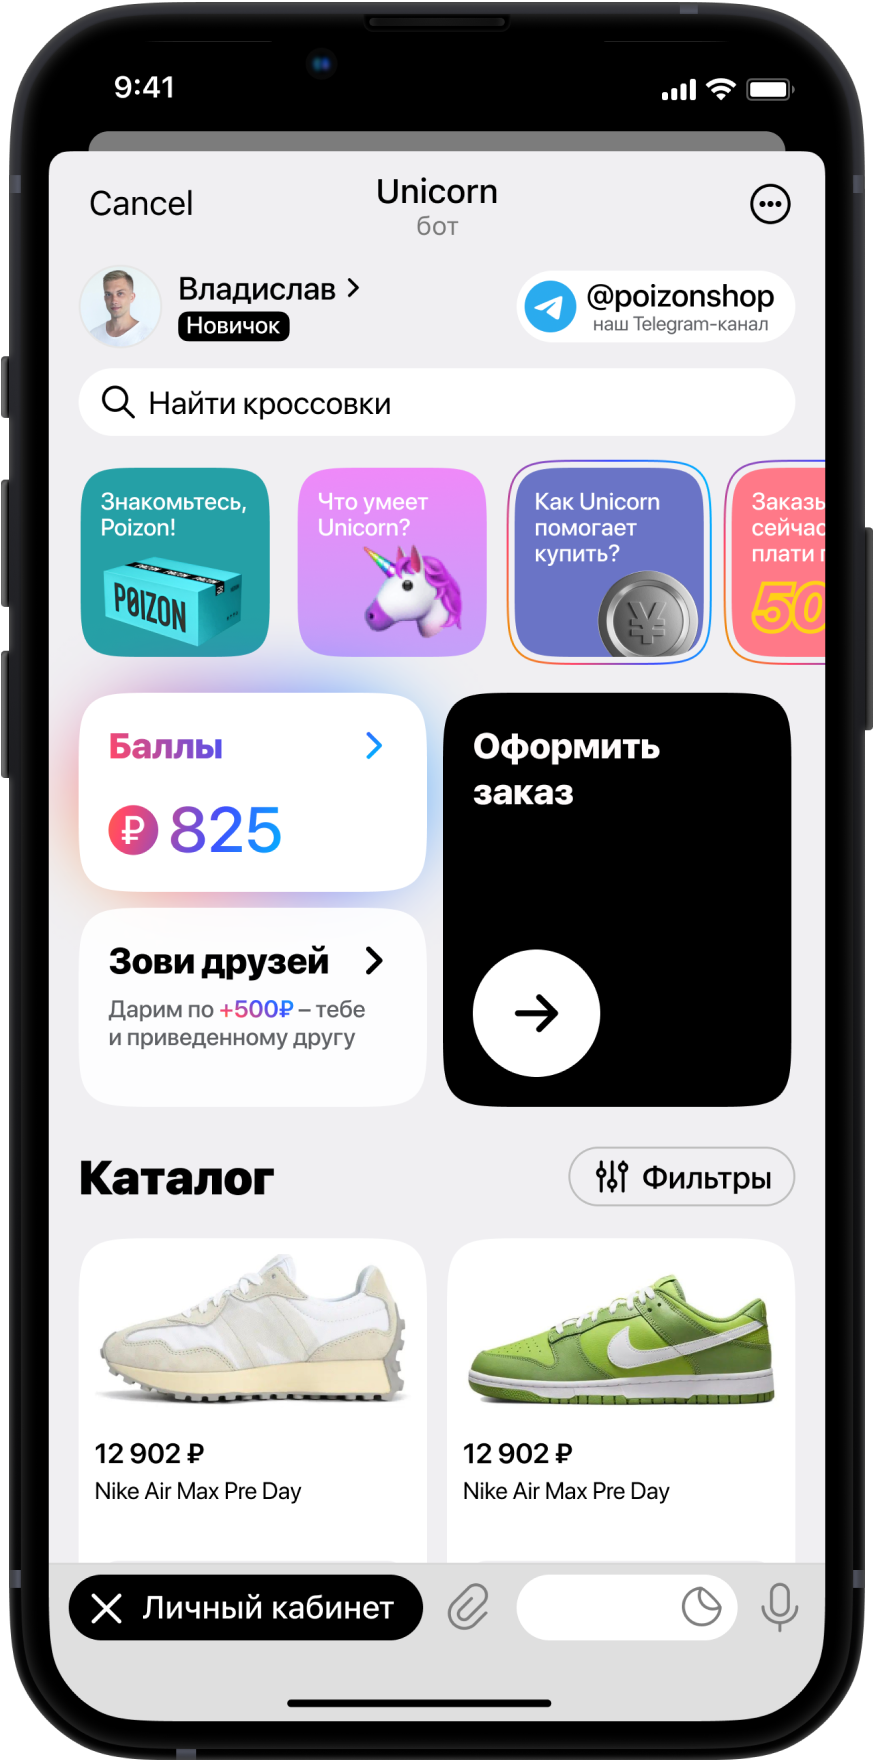 Unicorn App